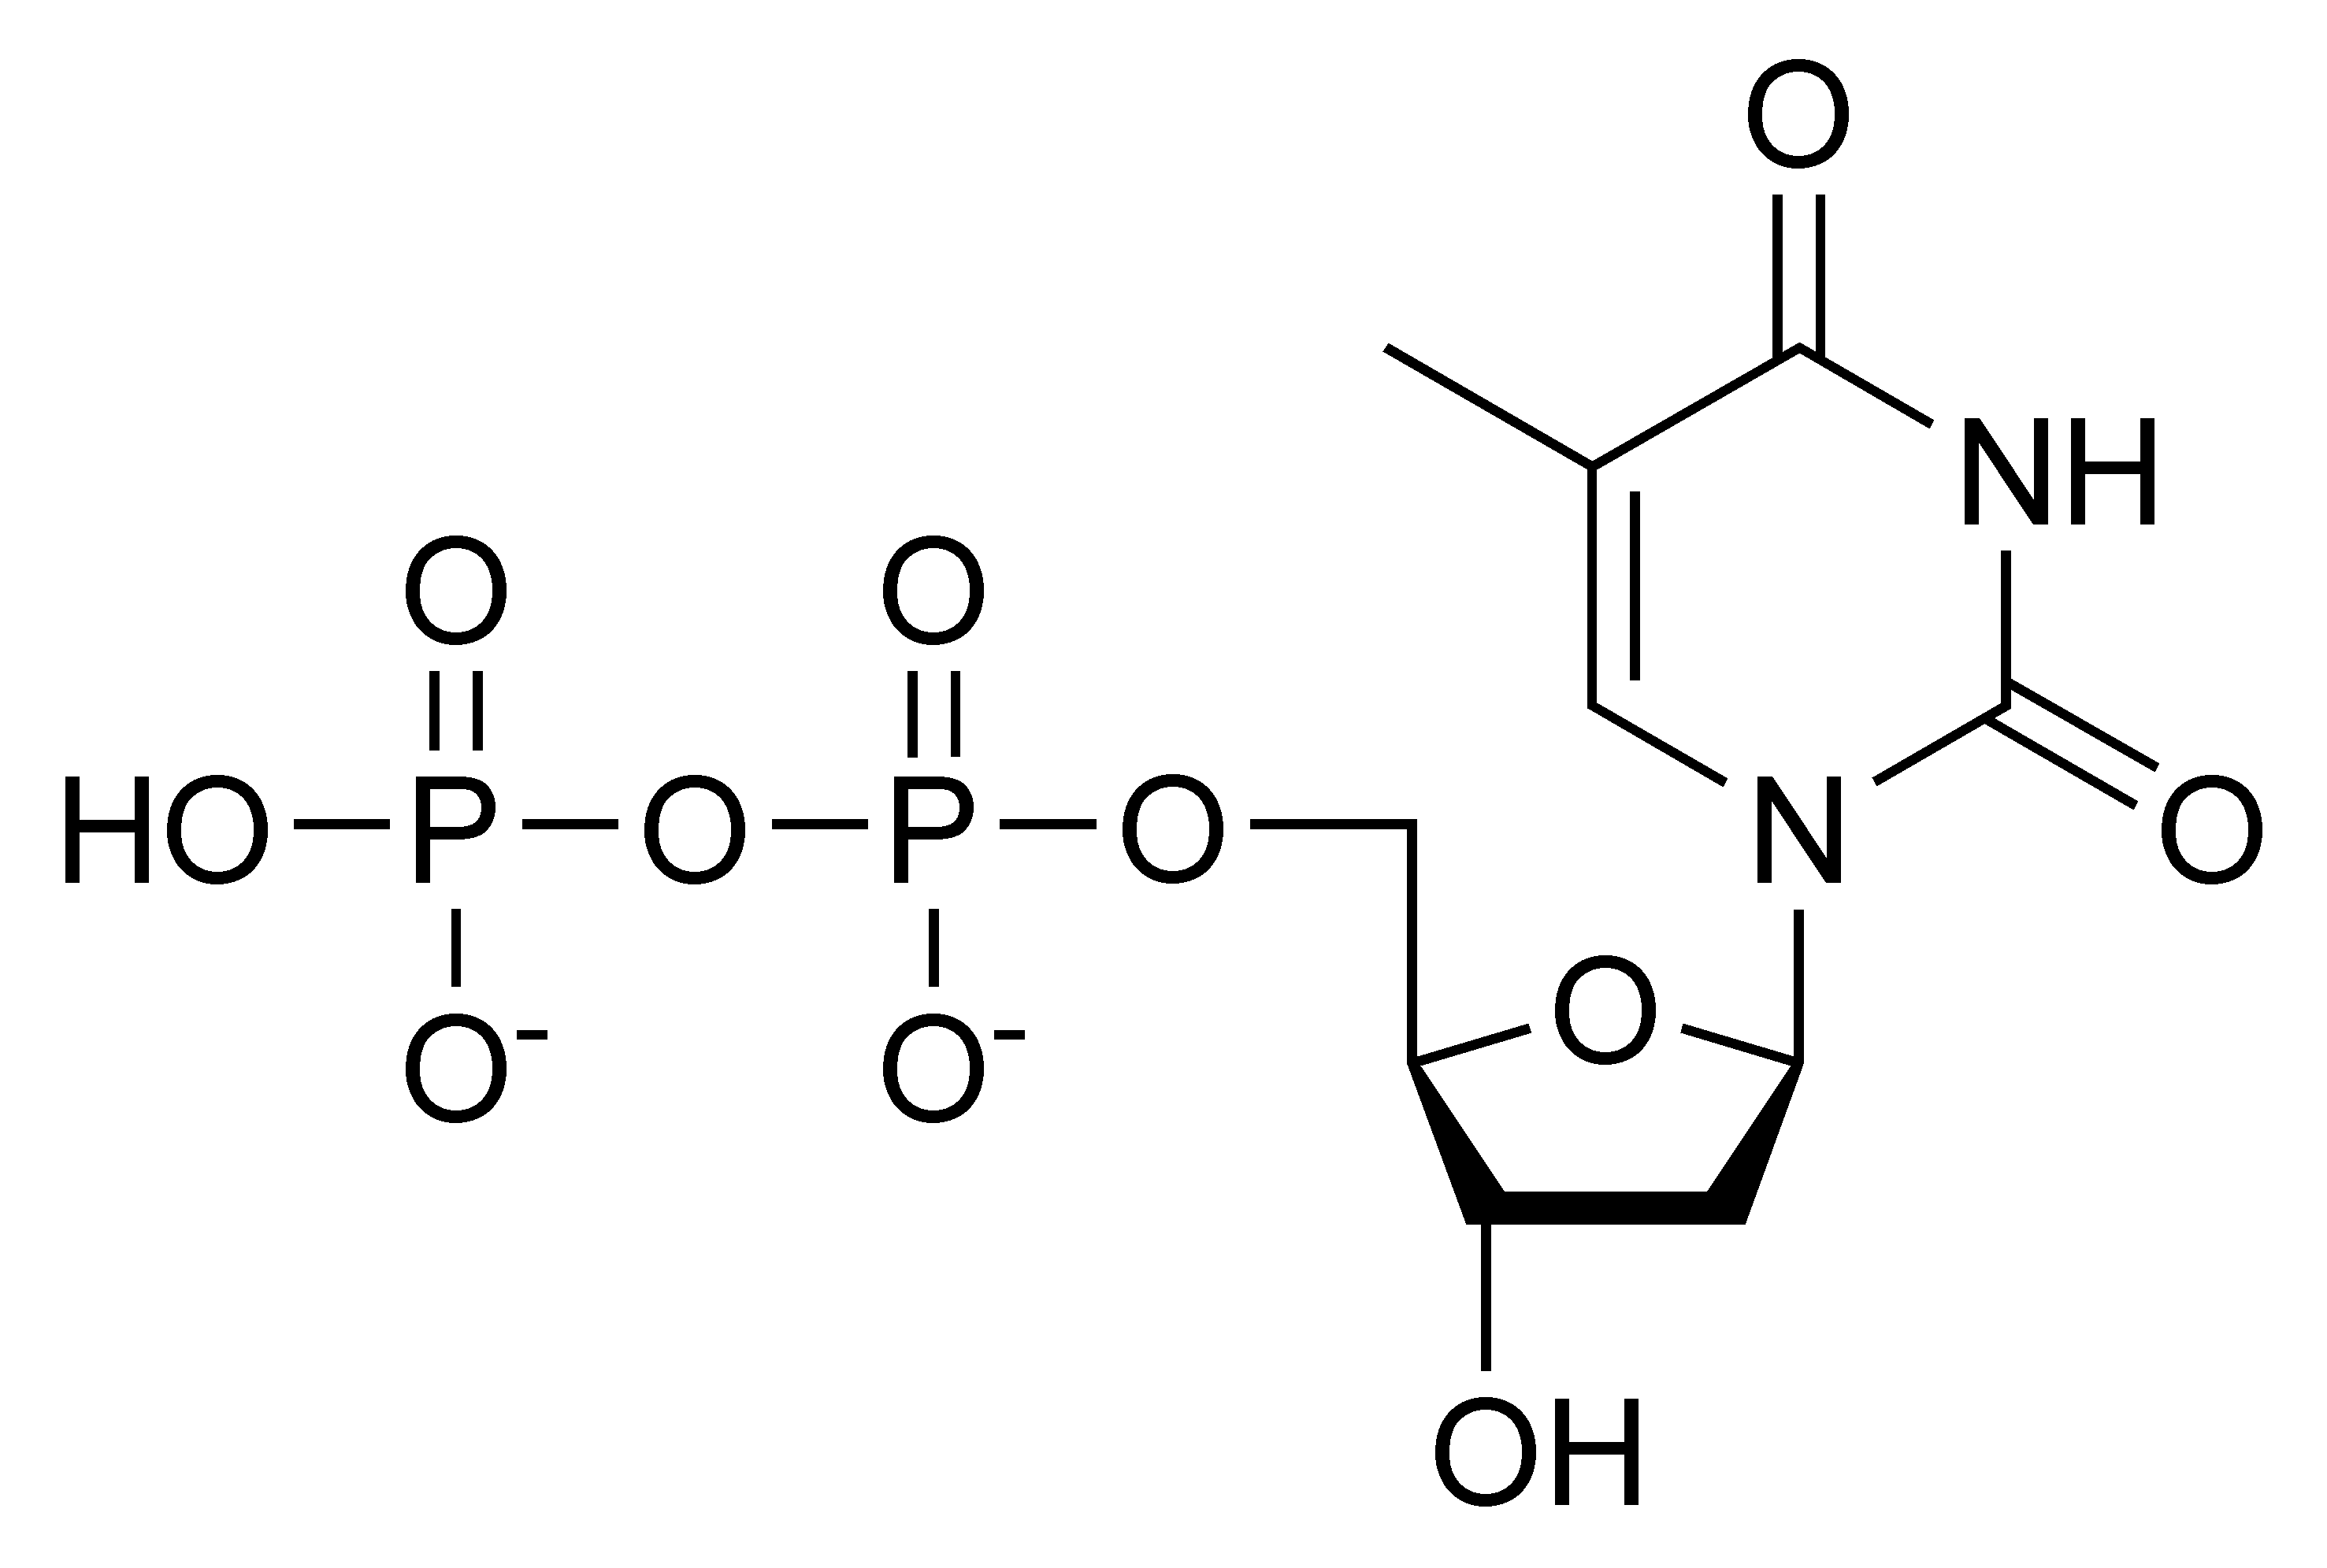 diphosphate